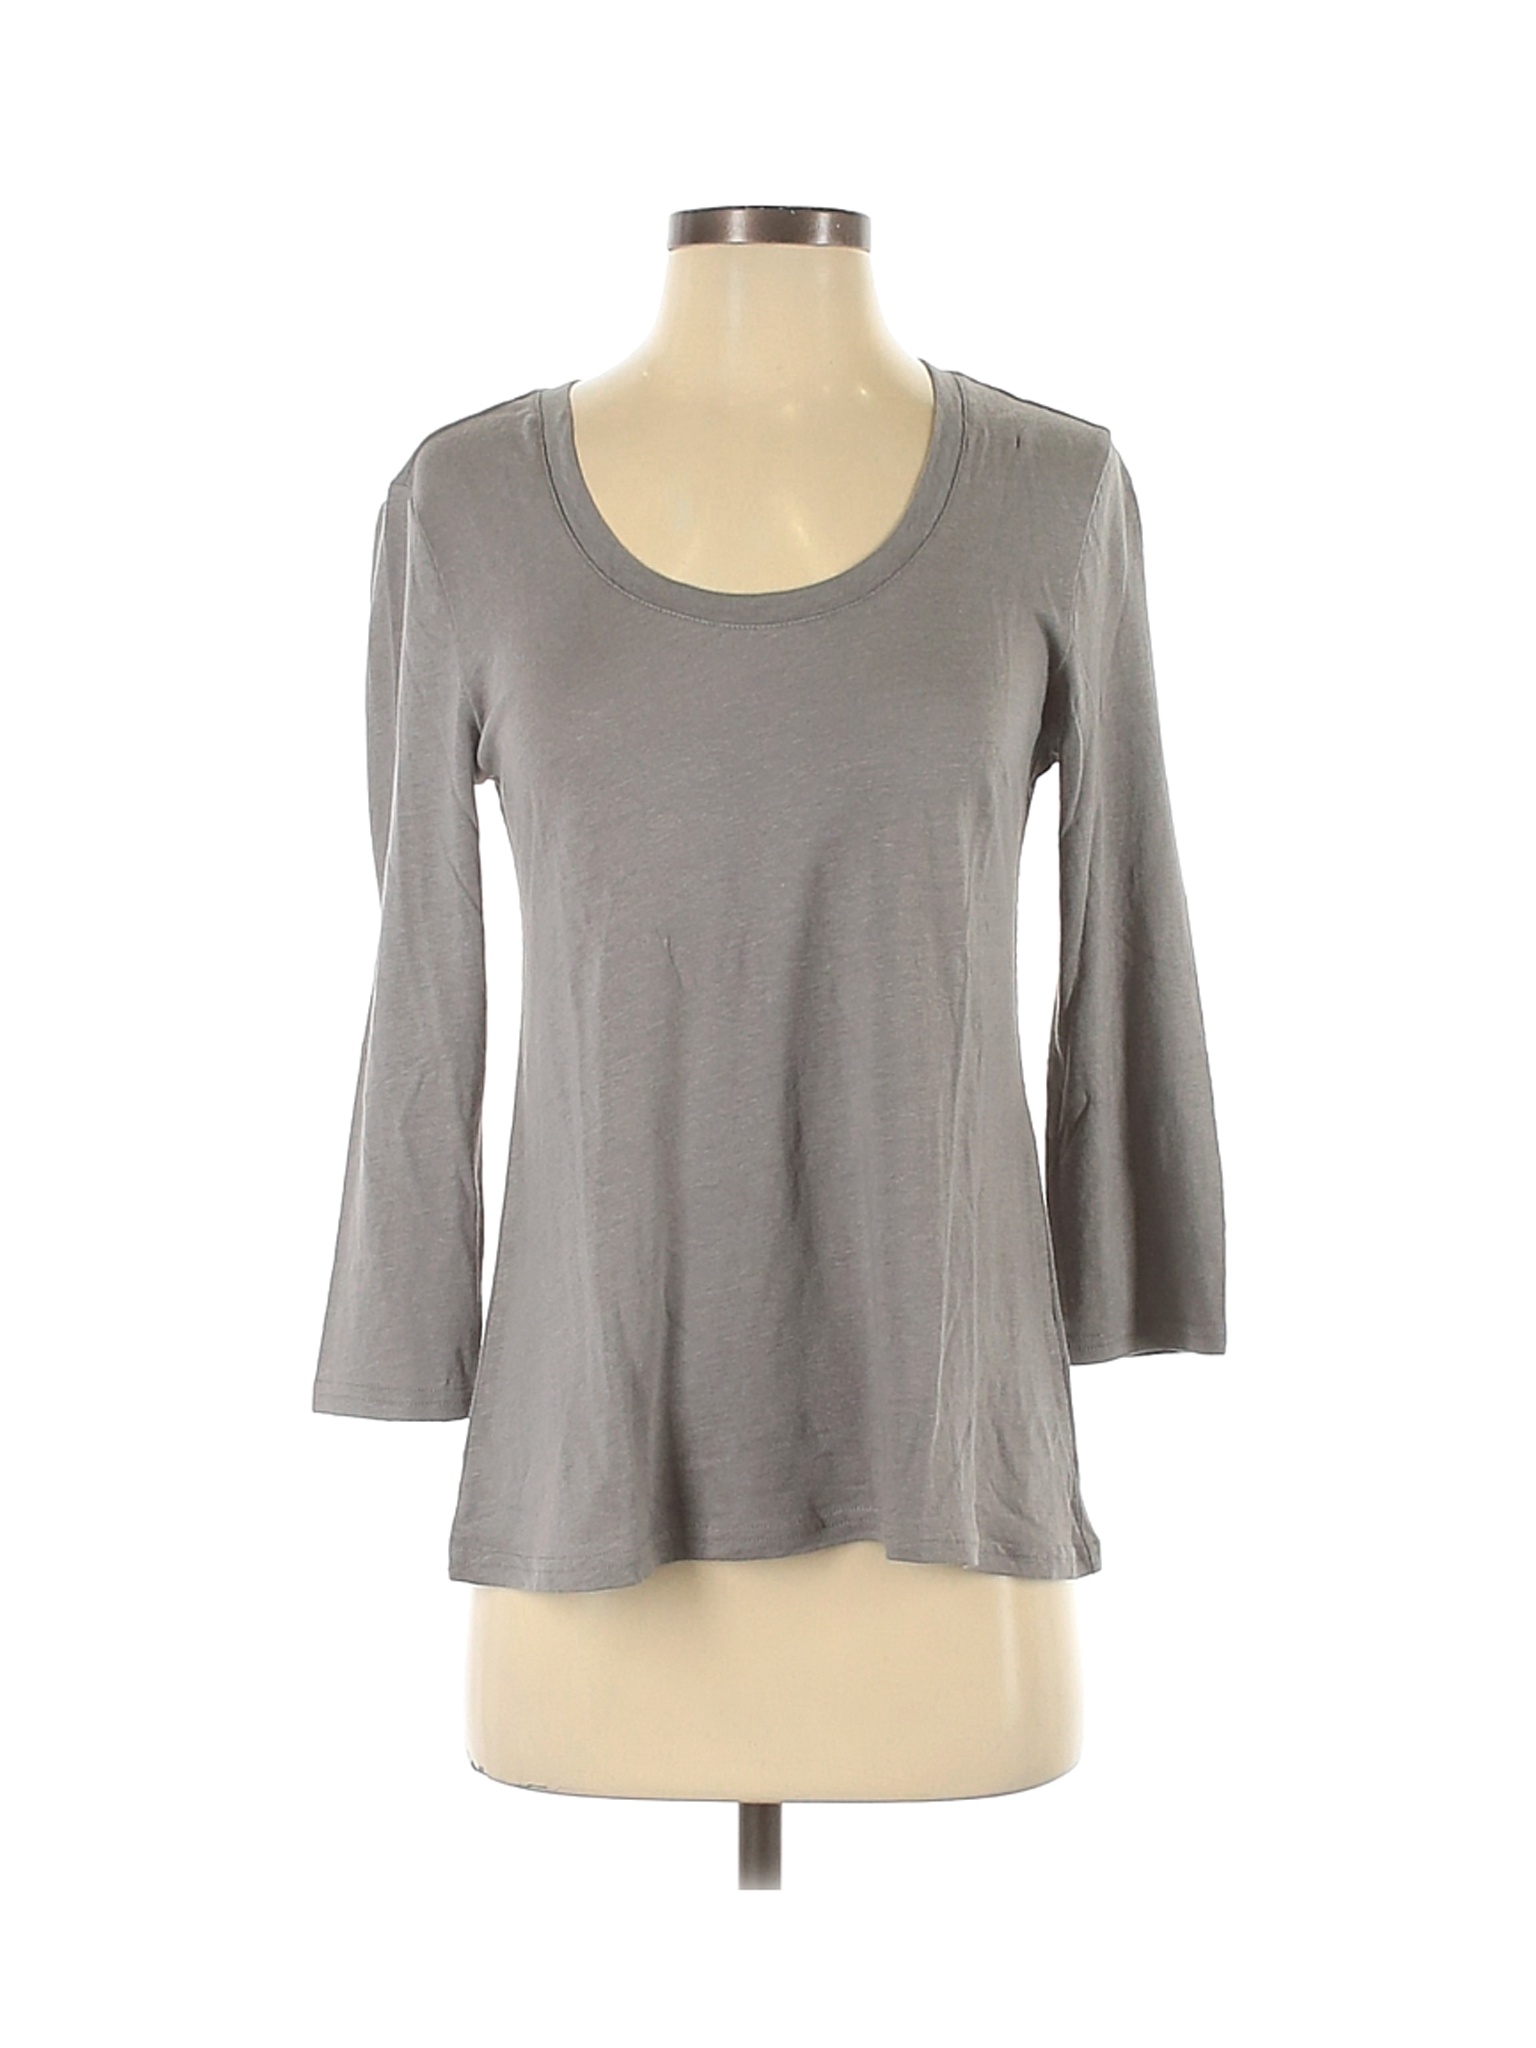 Garnet Hill Women Gray 3/4 Sleeve T-Shirt XS | eBay